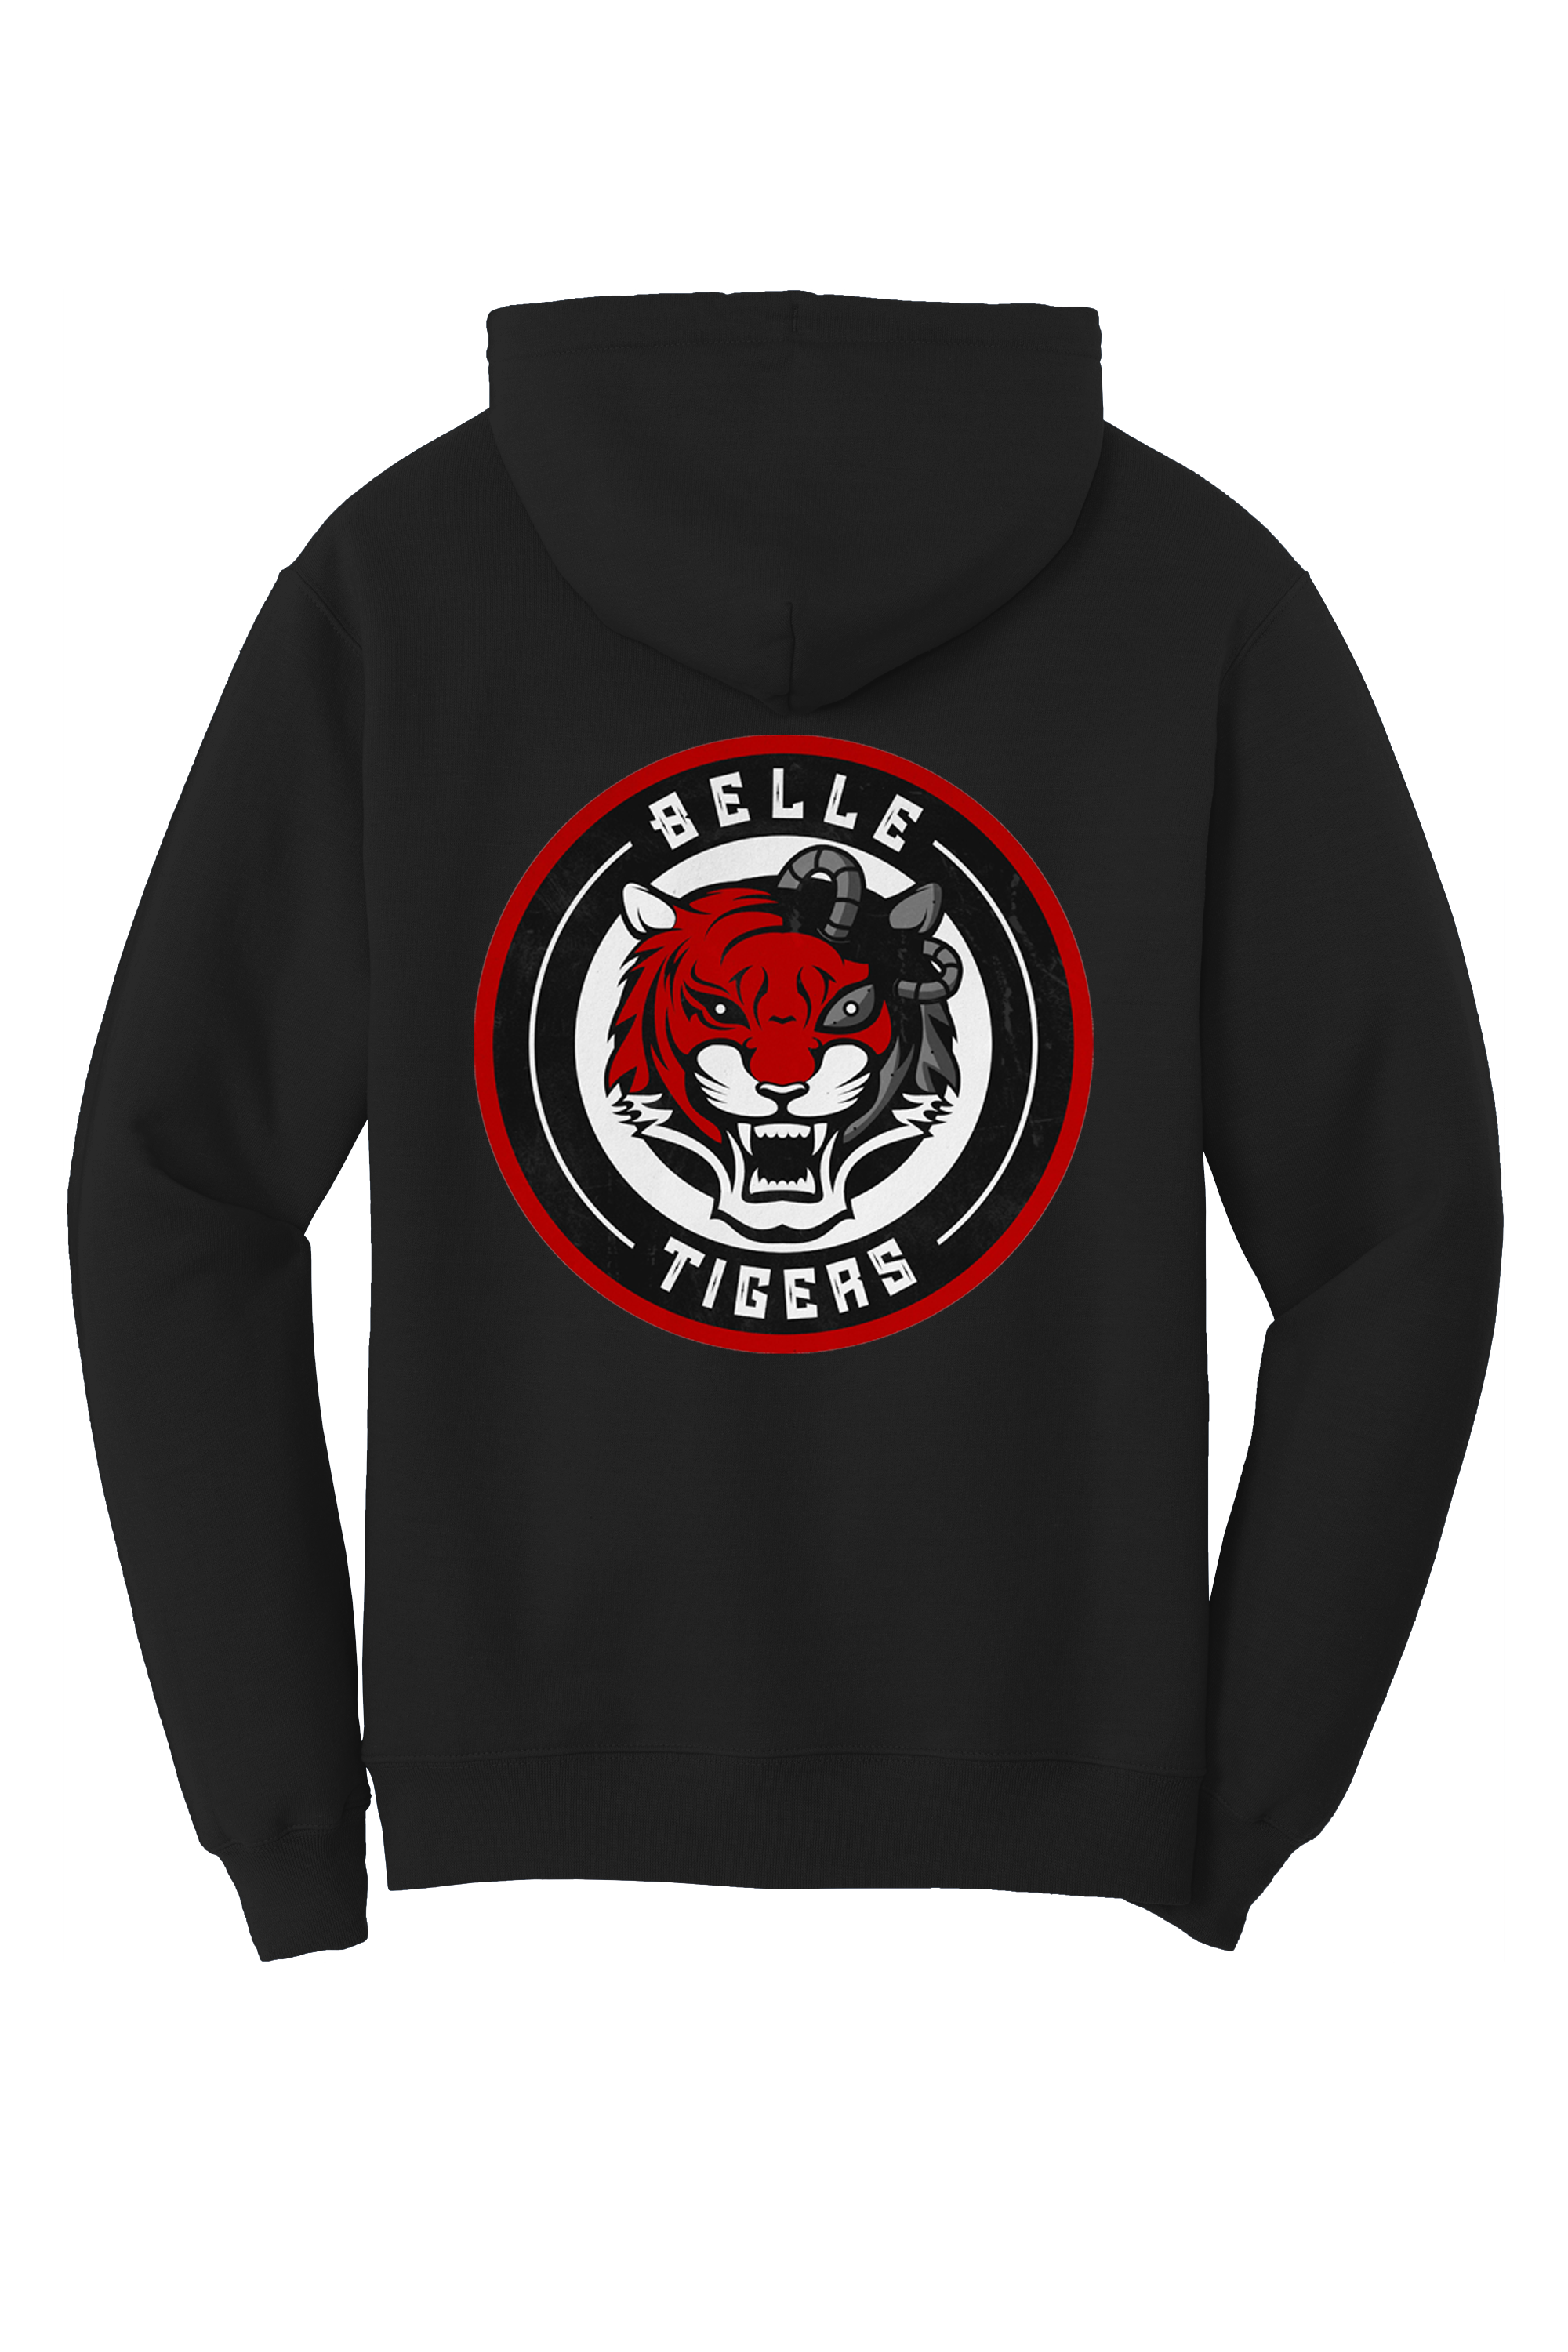 Belle High School | Street Series | Black Unisex Pullover Hoodie